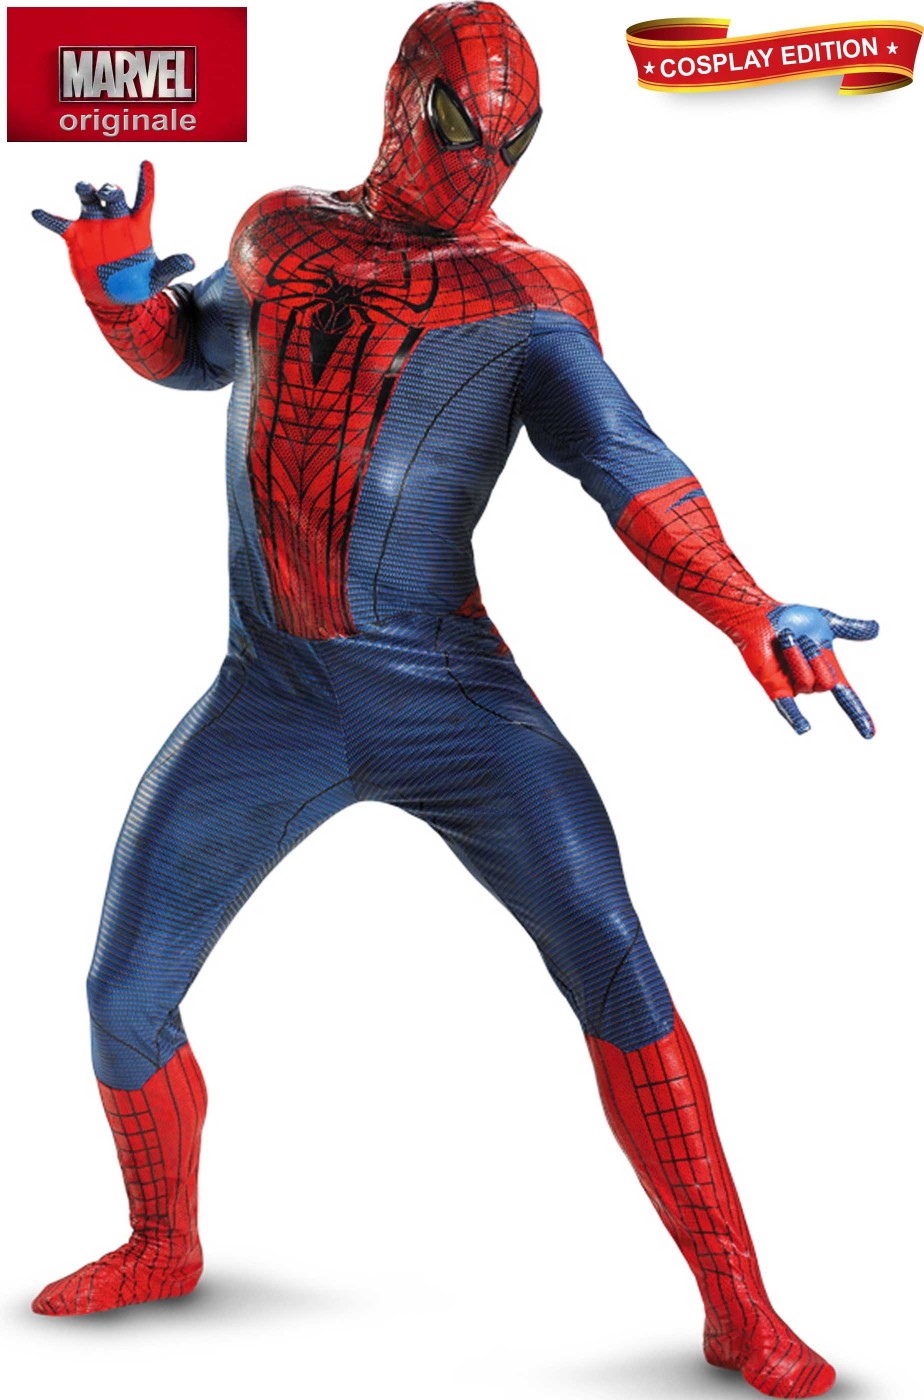 Costume Spiderman replica come quello del film. In Spandex